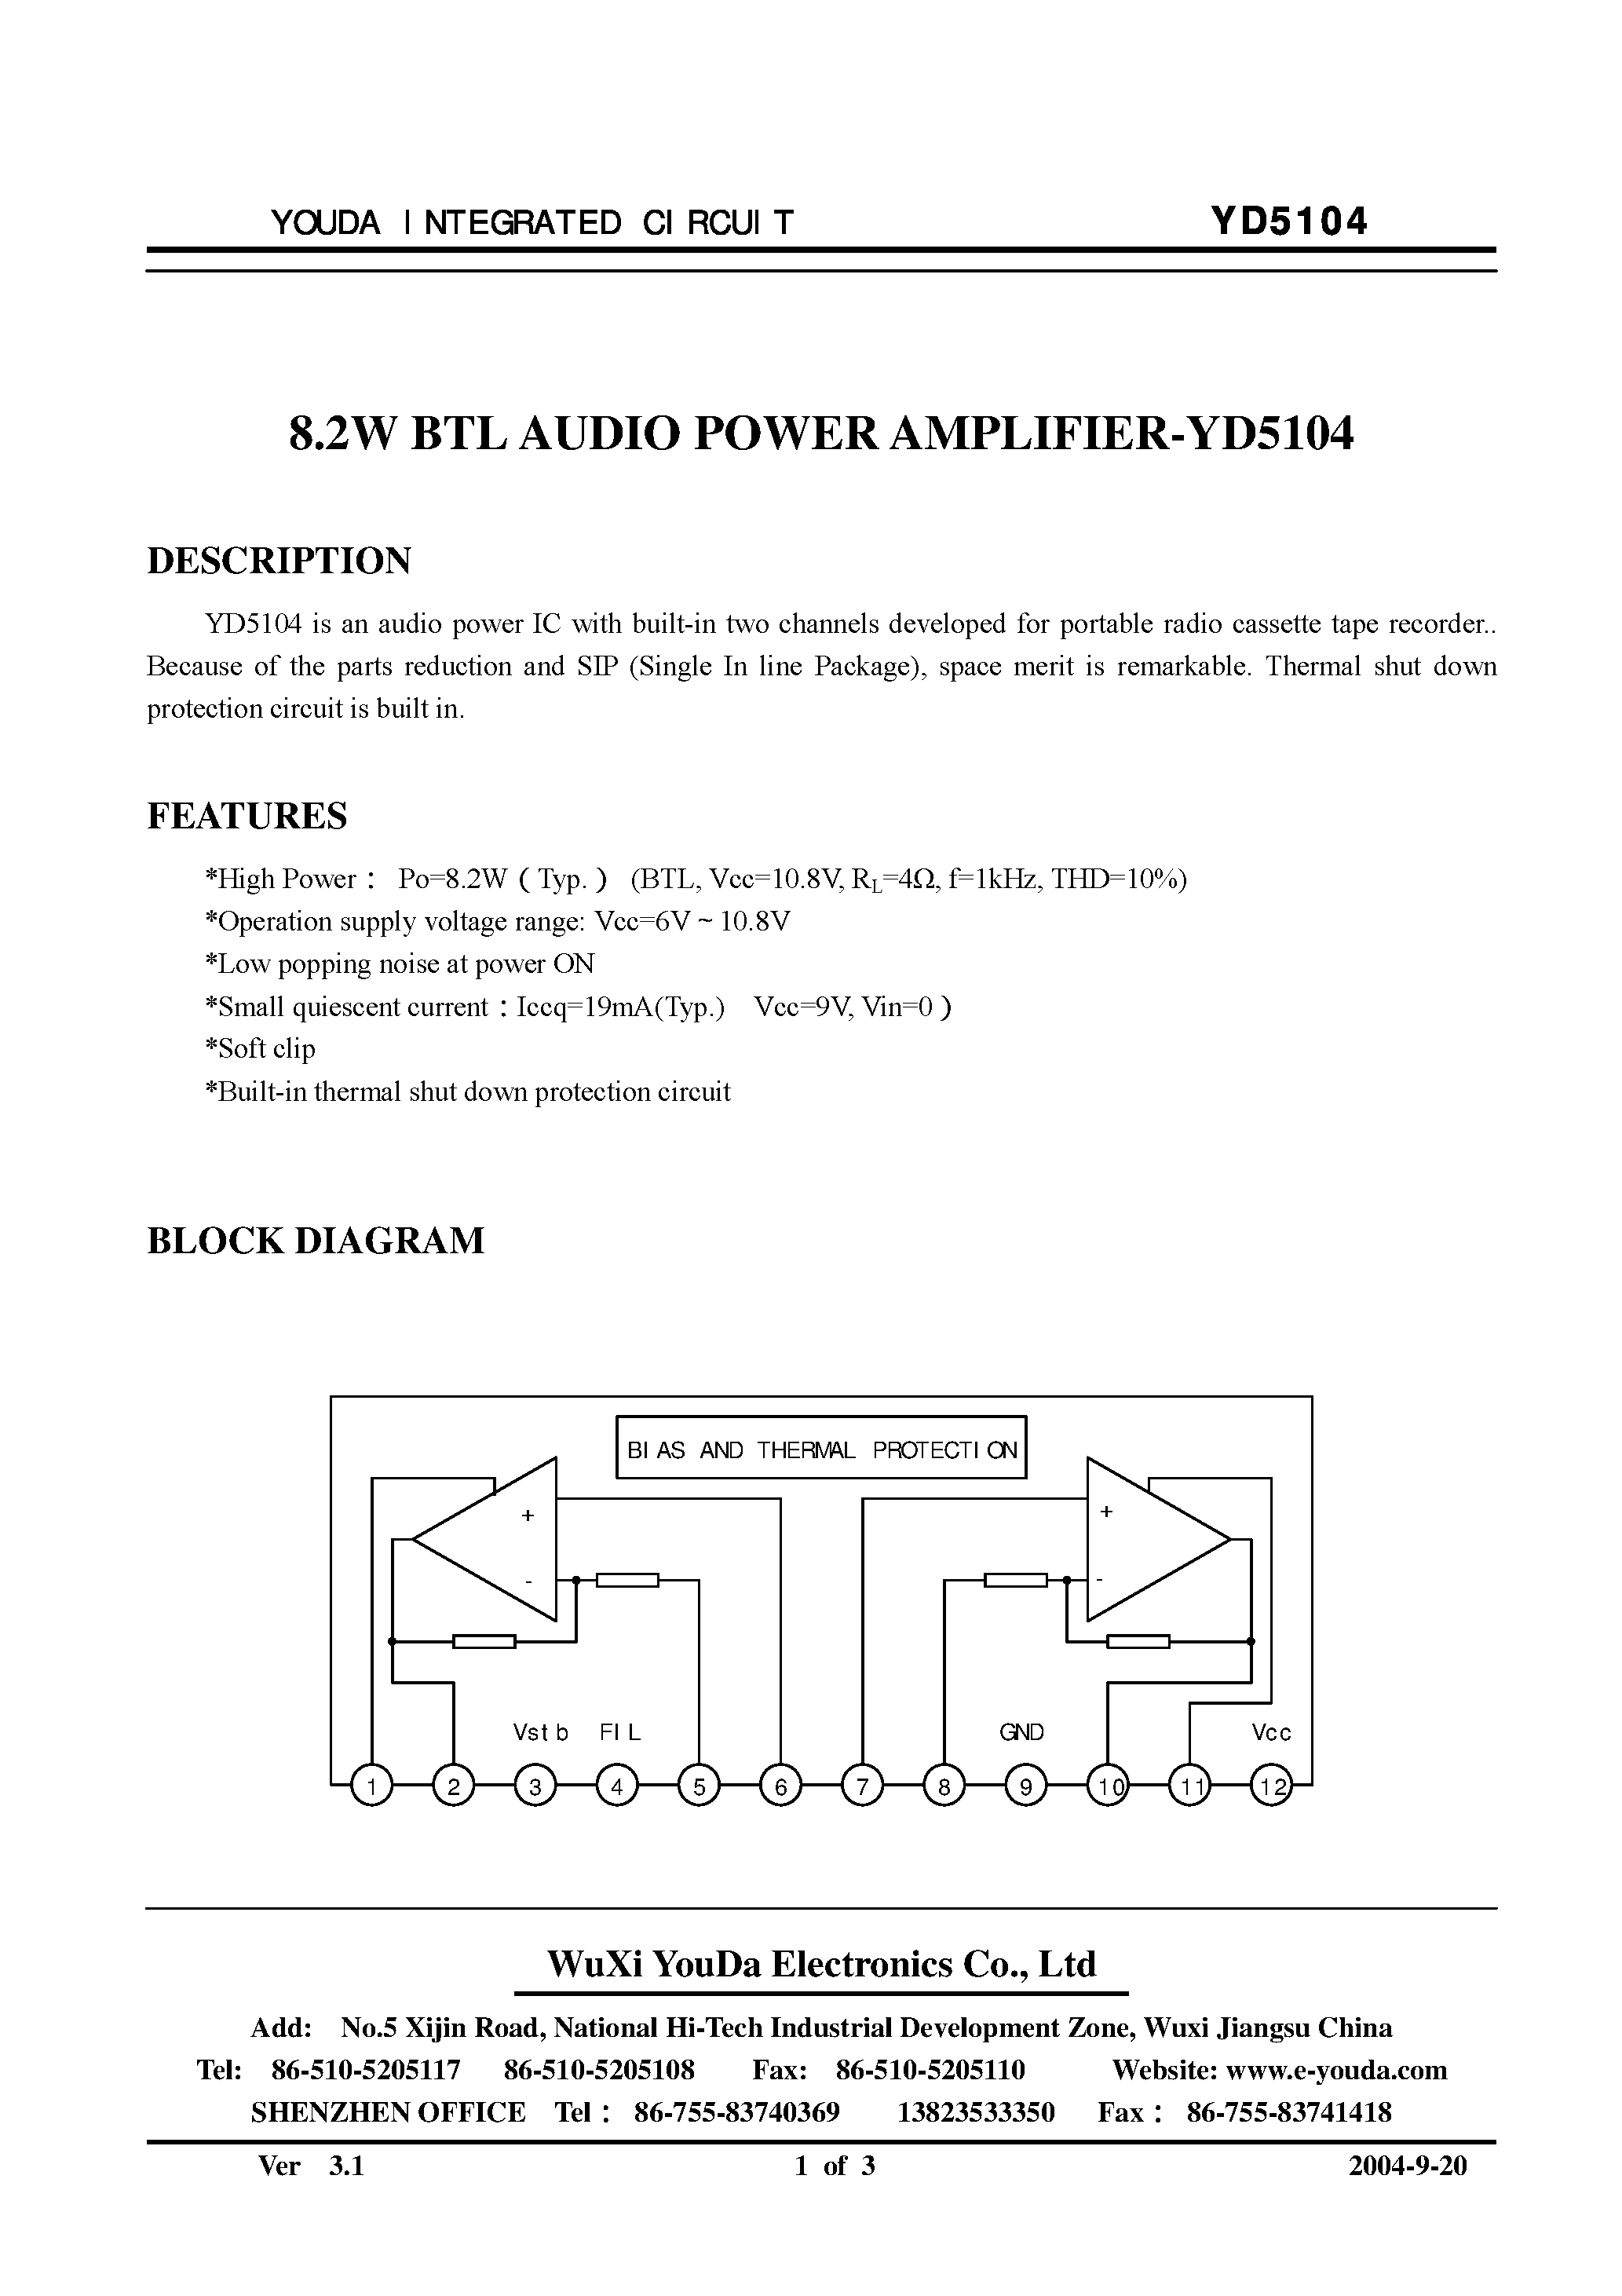 Даташит YD5104 - 8.2W BTL Audio Power Amplifier страница 1